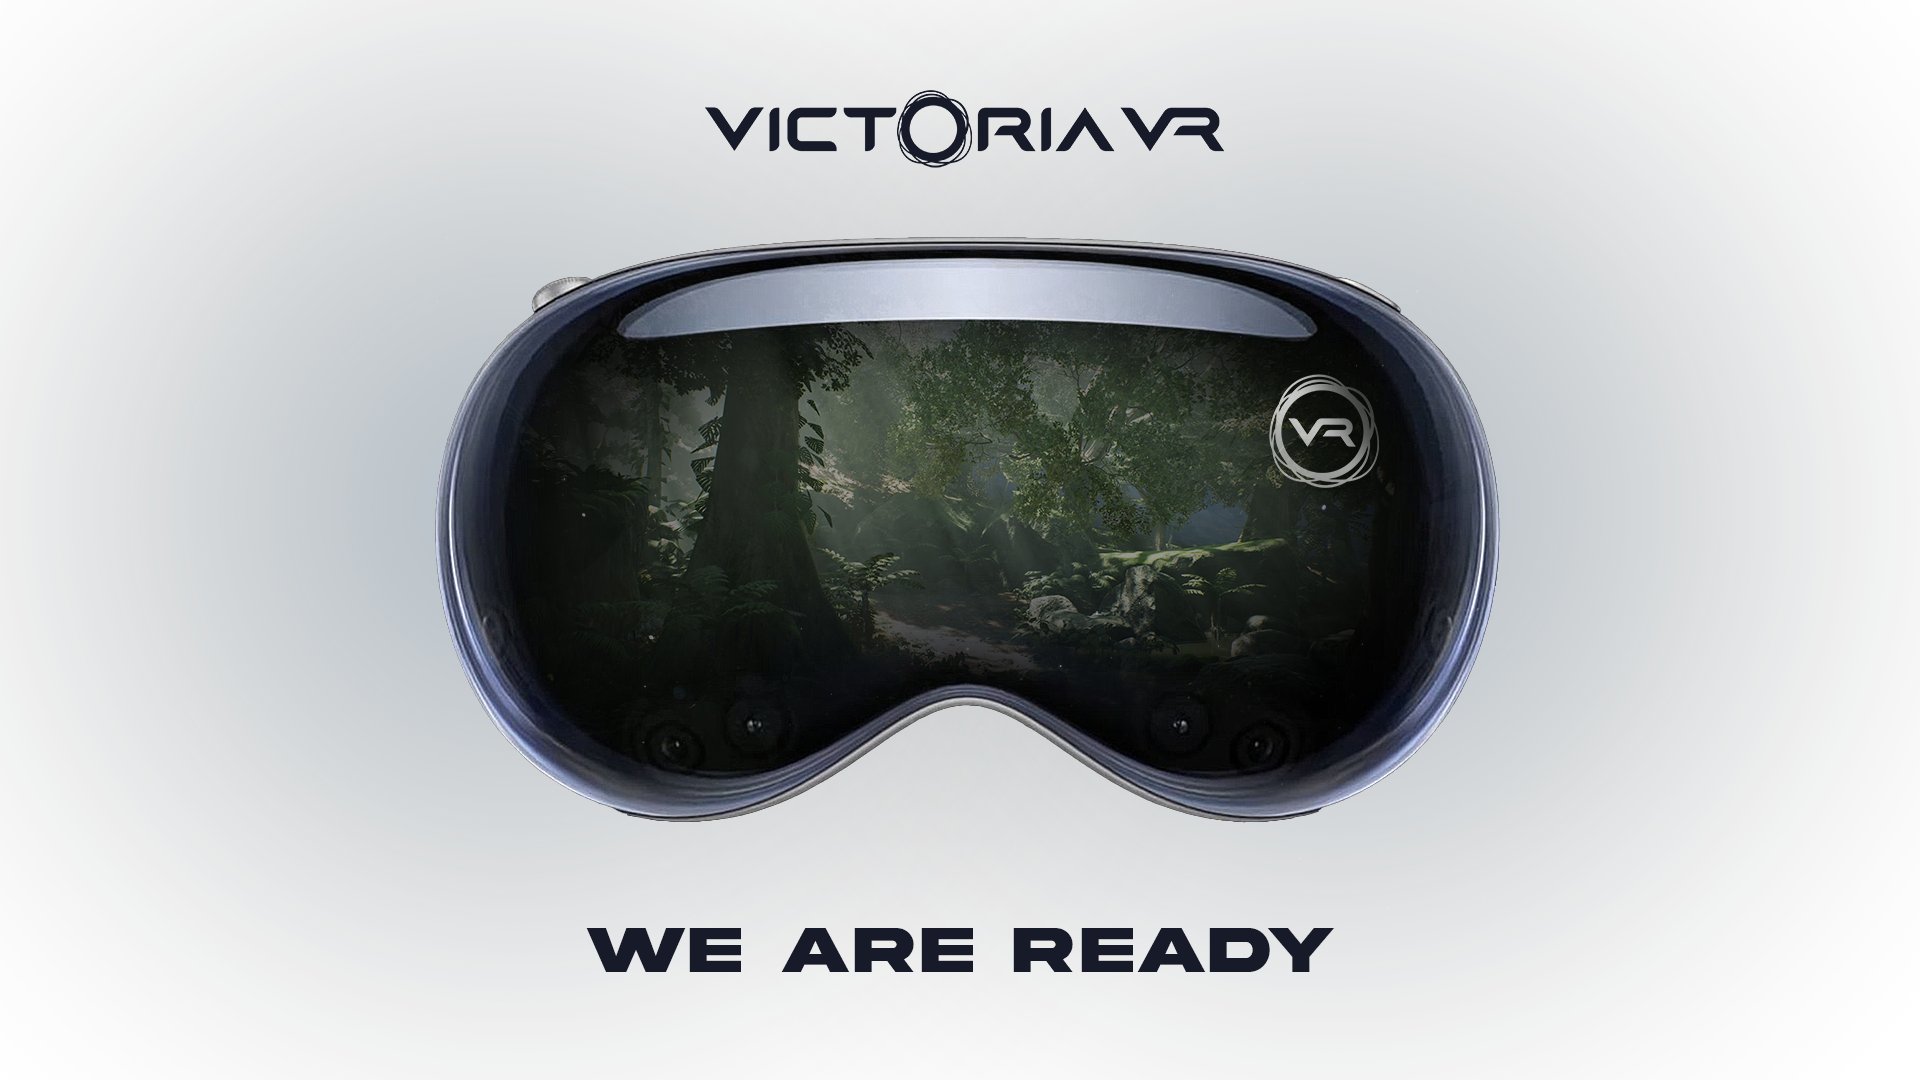 Victoria VR Kufungua Metaverse ya Kwanza ya Web3 Kwenye Apple Vision Pro